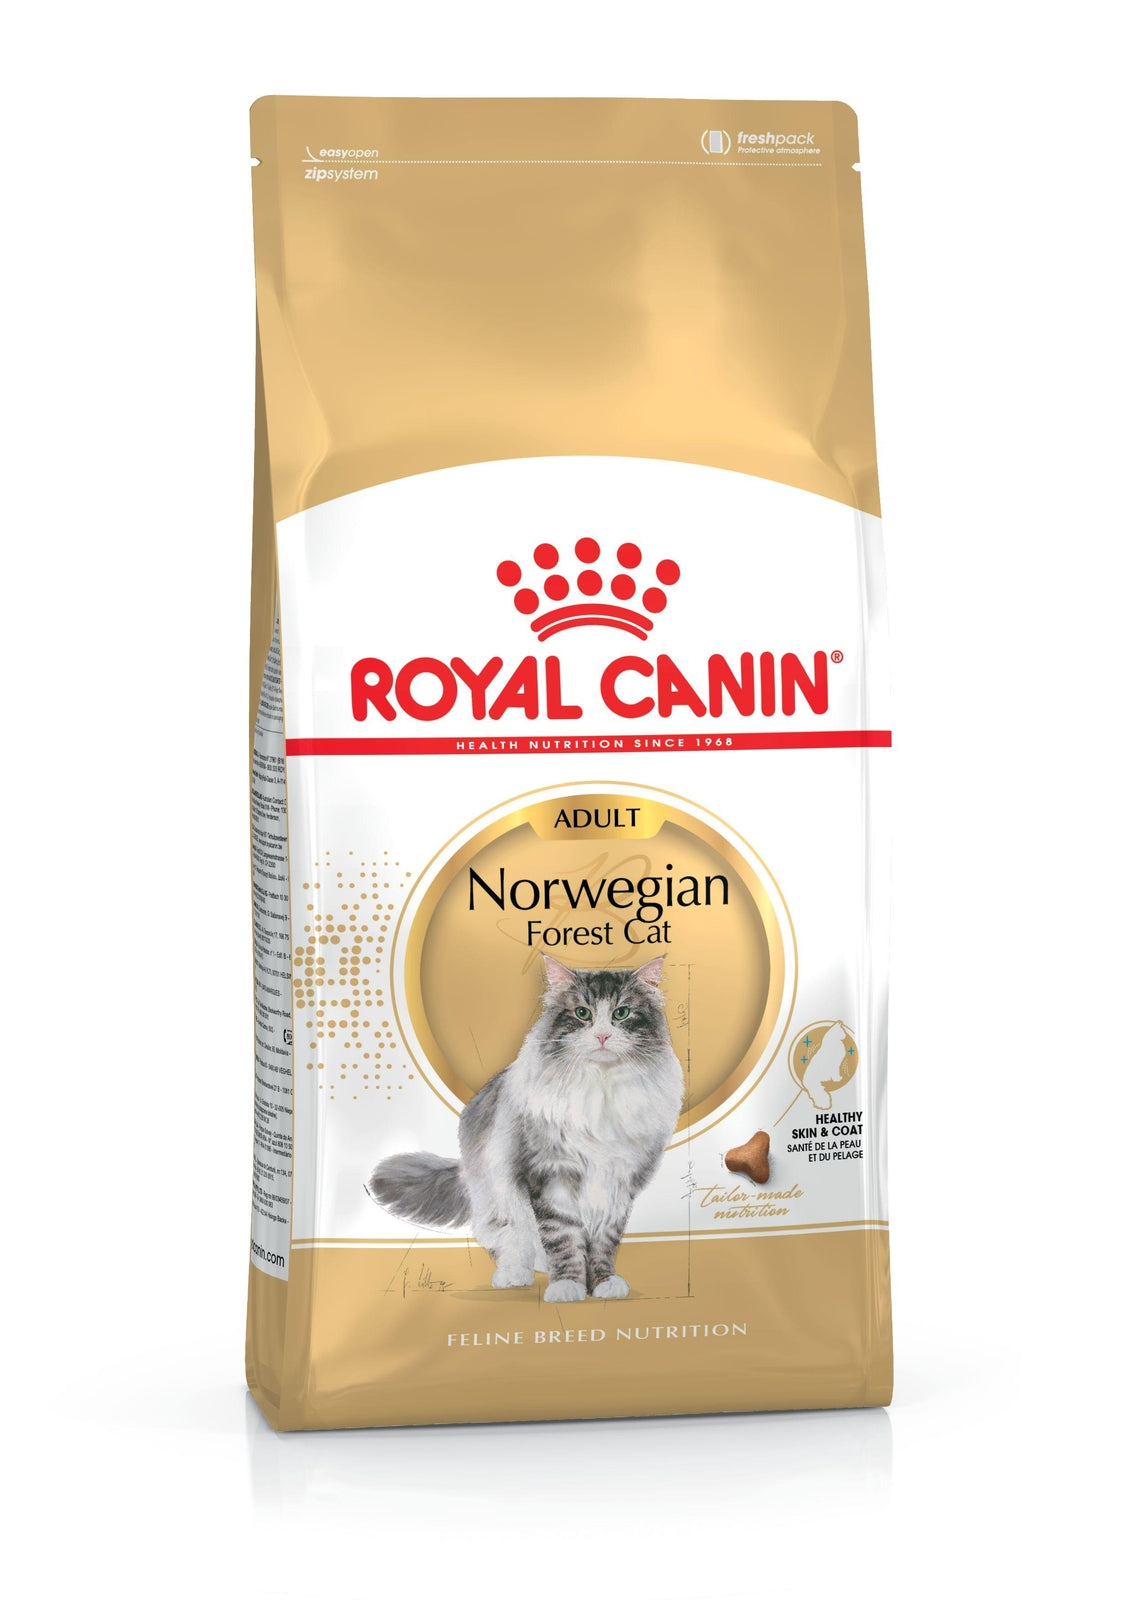 Royal Canin Norwegian Forest Cat kissalle 10 kg — 